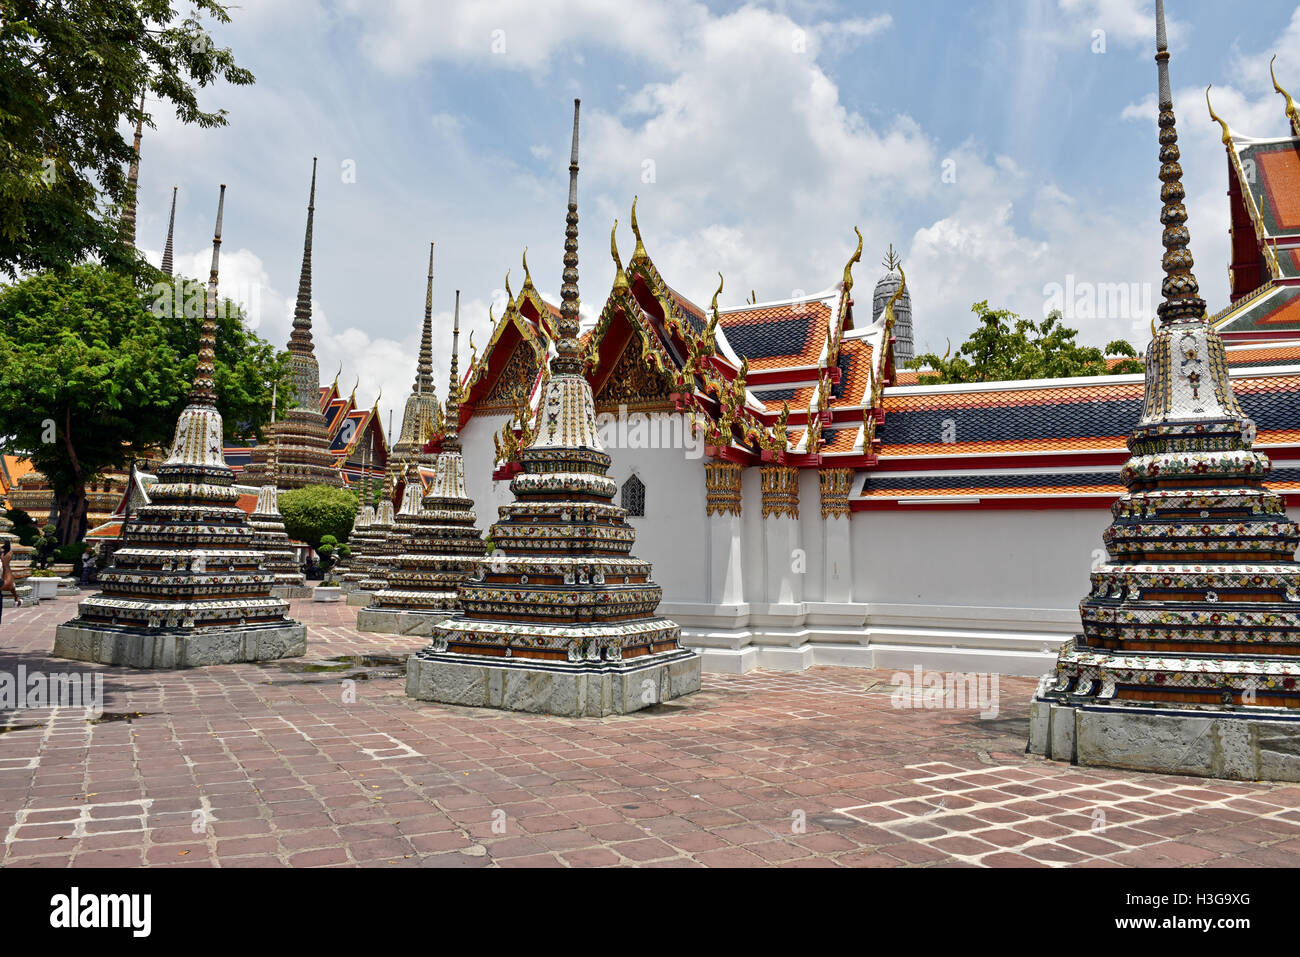 Templo Wat Pho, en Bangkok, Tailandia, con sus stupas y capiteles profusamente talladas, y los edificios se ve absolutamente impresionante. Foto de stock